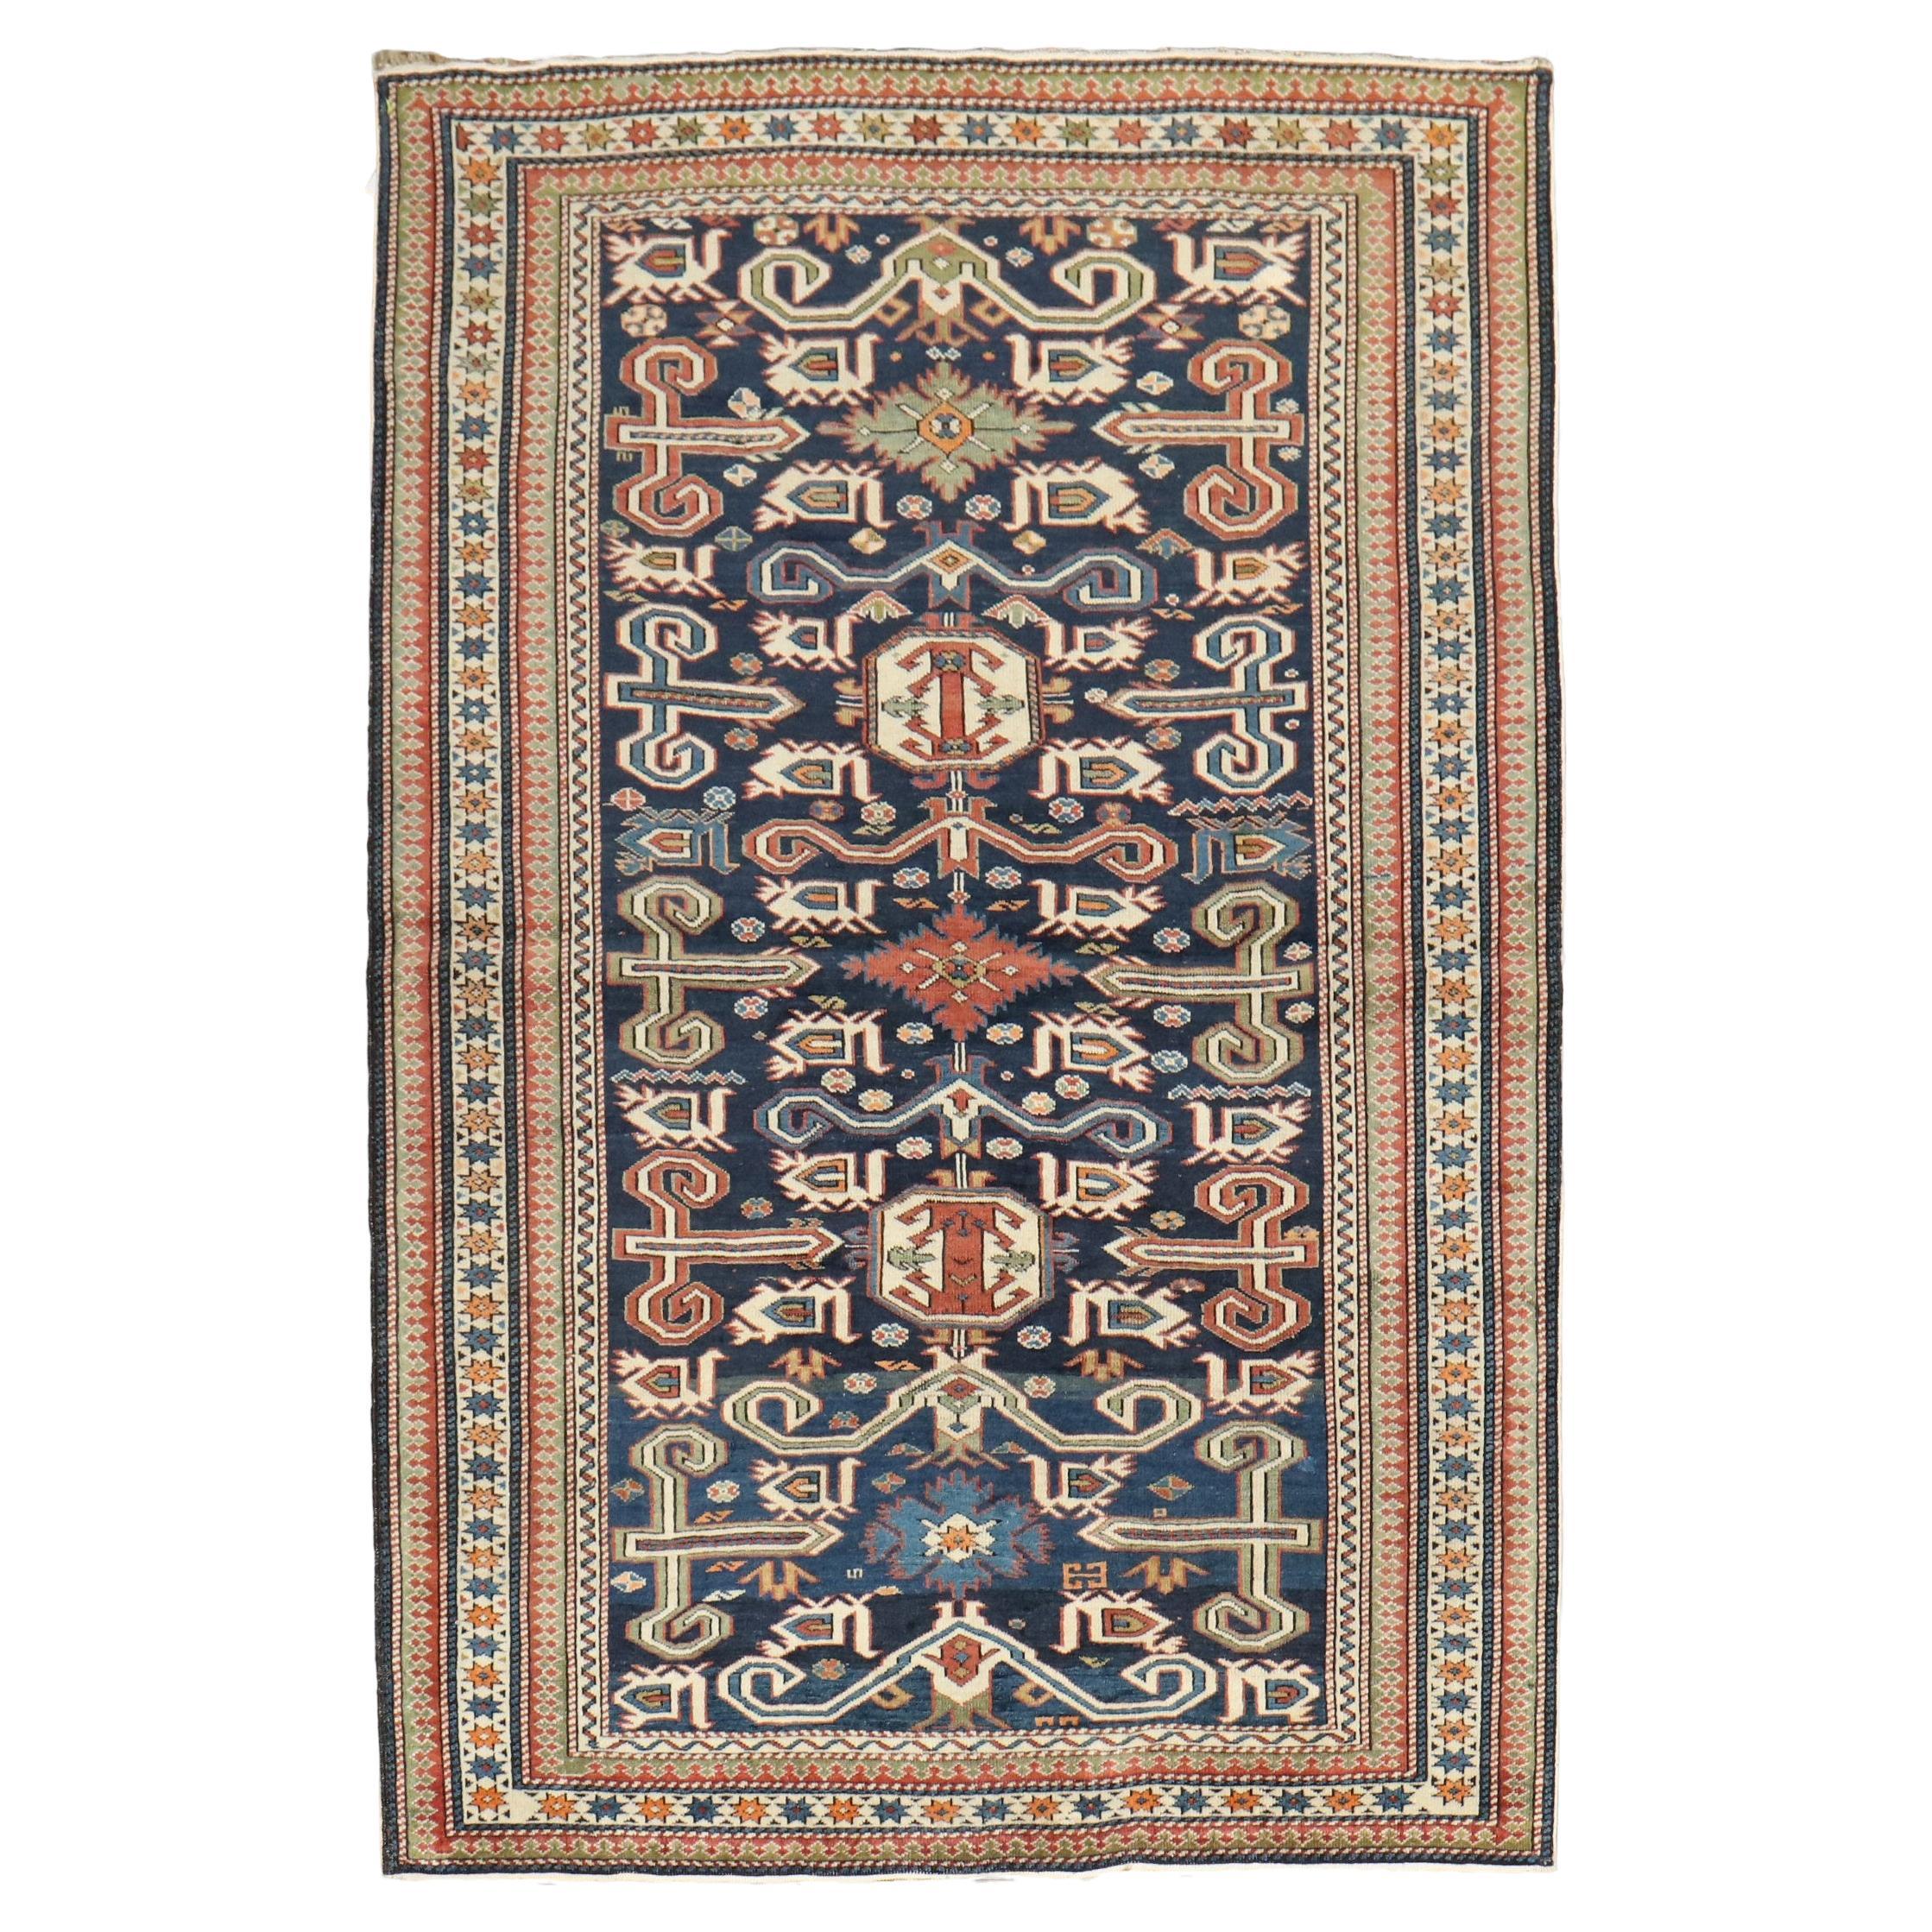 Blauer antiker kaukasischer Perpedil-Teppich des frühen 20. Jahrhunderts